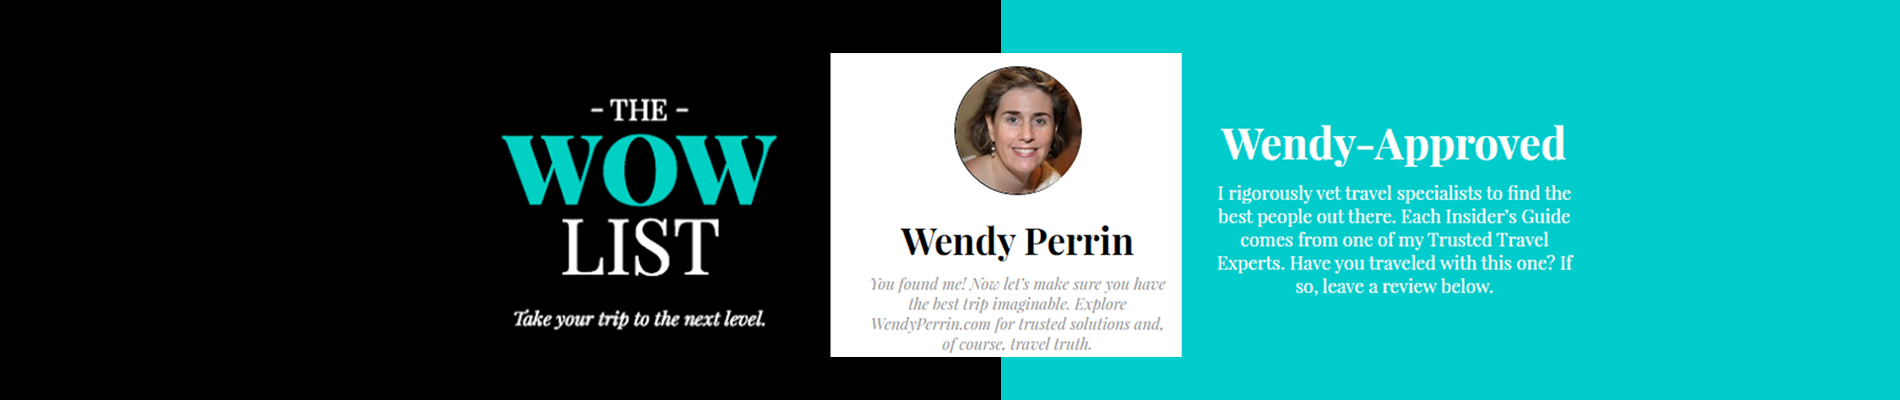 wendy perrin header 1